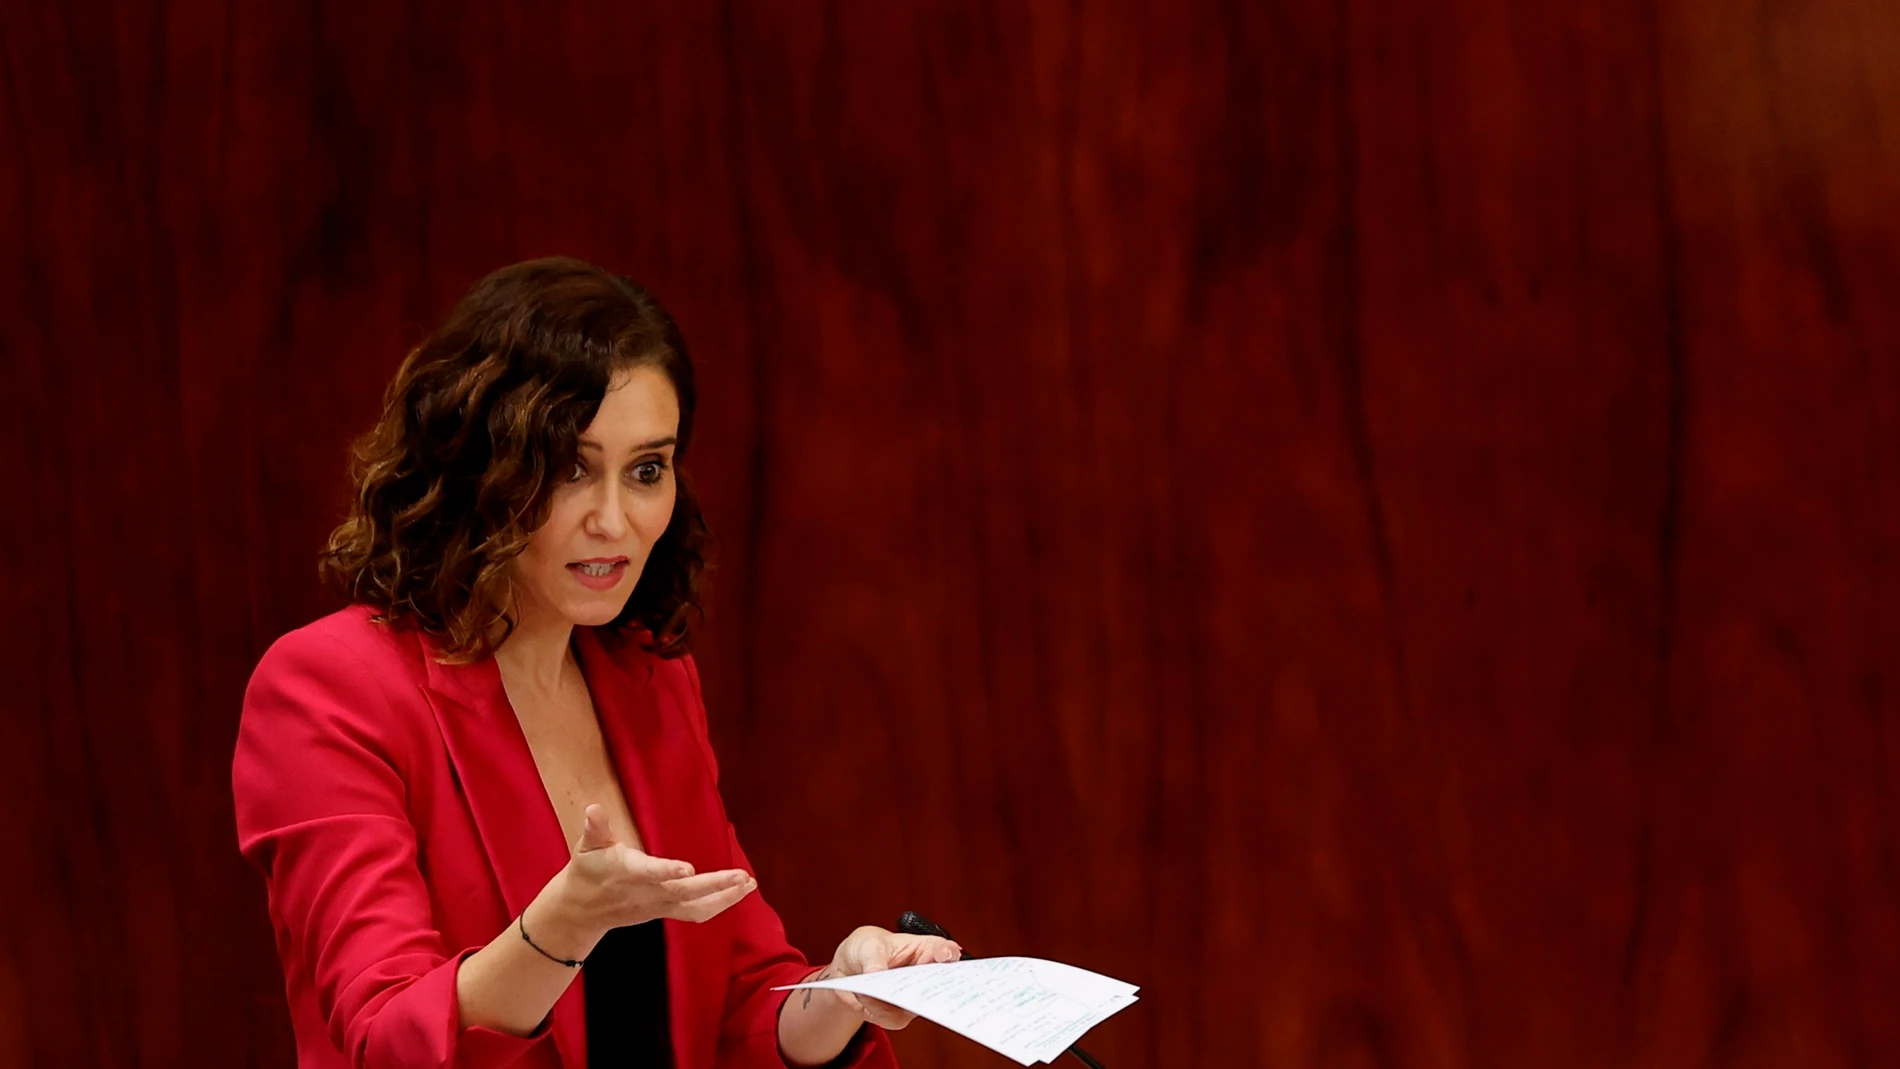 La presidenta de la Comunidad de Madrid, Isabel Díaz Ayuso, interviene durante el pleno de la Asamblea de la Comunidad de Madrid